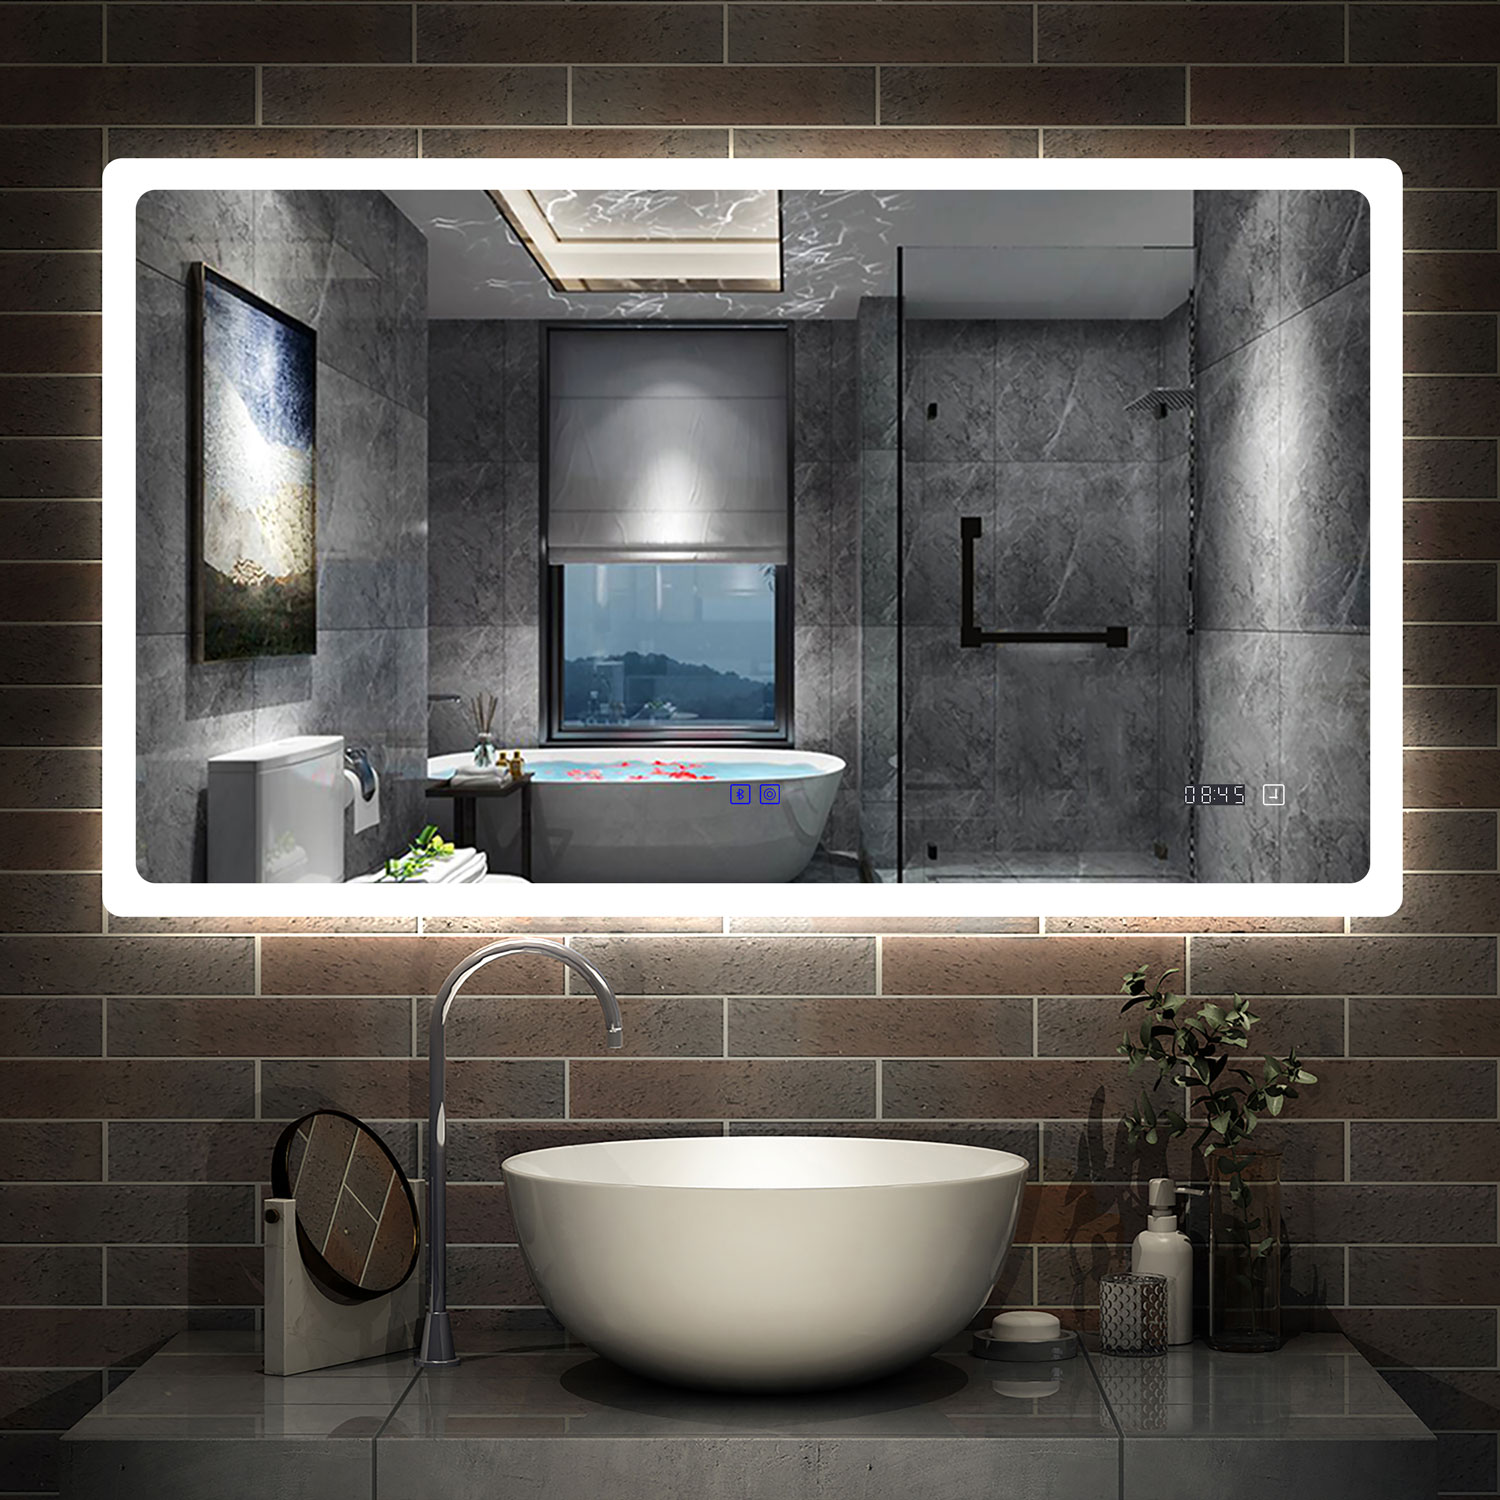 Miroir salle de bain LED 120 cm x 105 cm - interrupteur sensitif - ELEGANCE